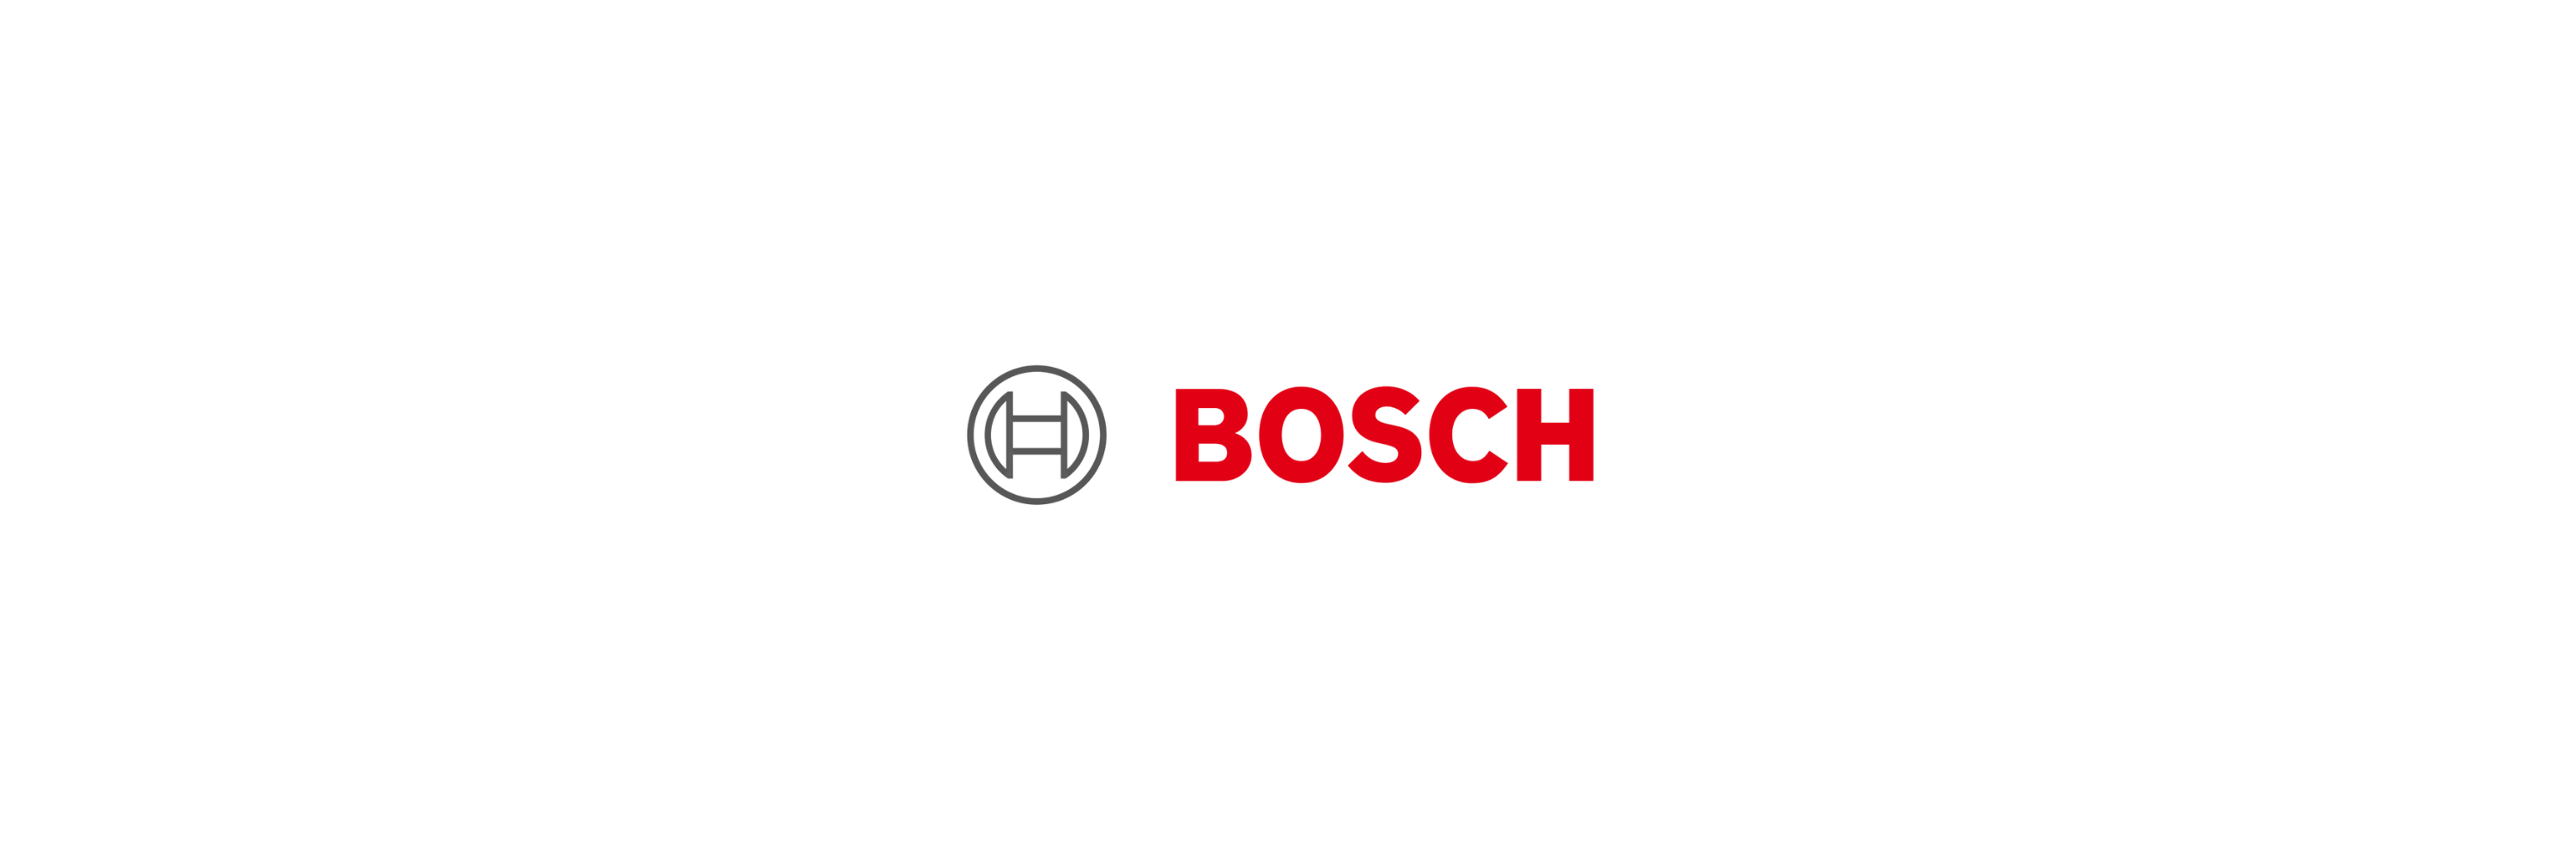 Bosch - Klenk Maschinenhandel